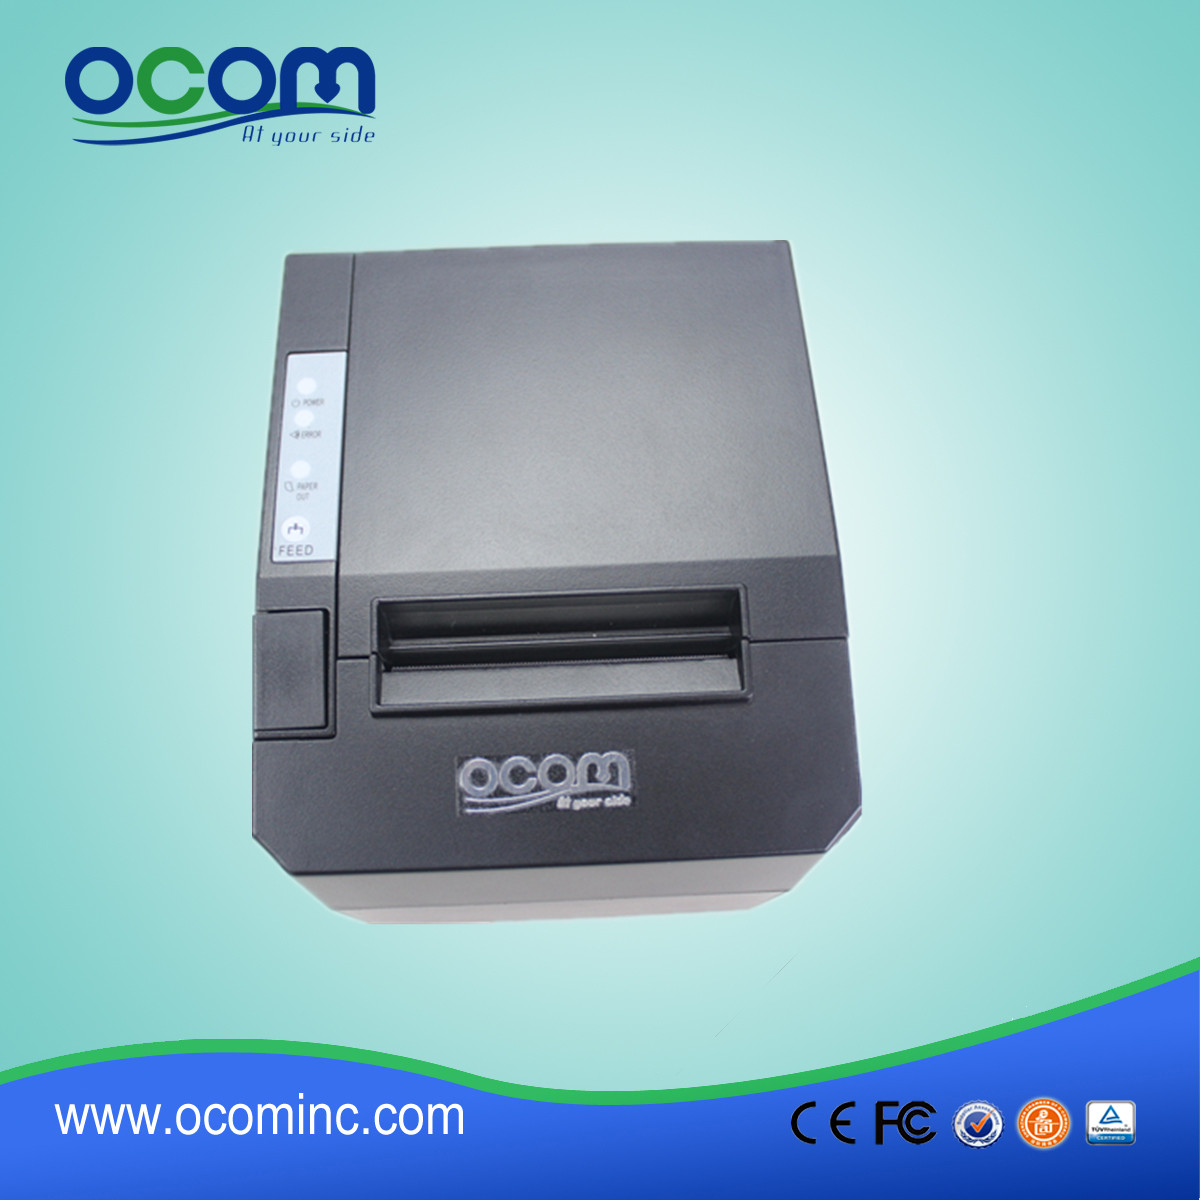 中国制造低成本的WiFi或bletooth POS收据打印机OCPP-88A